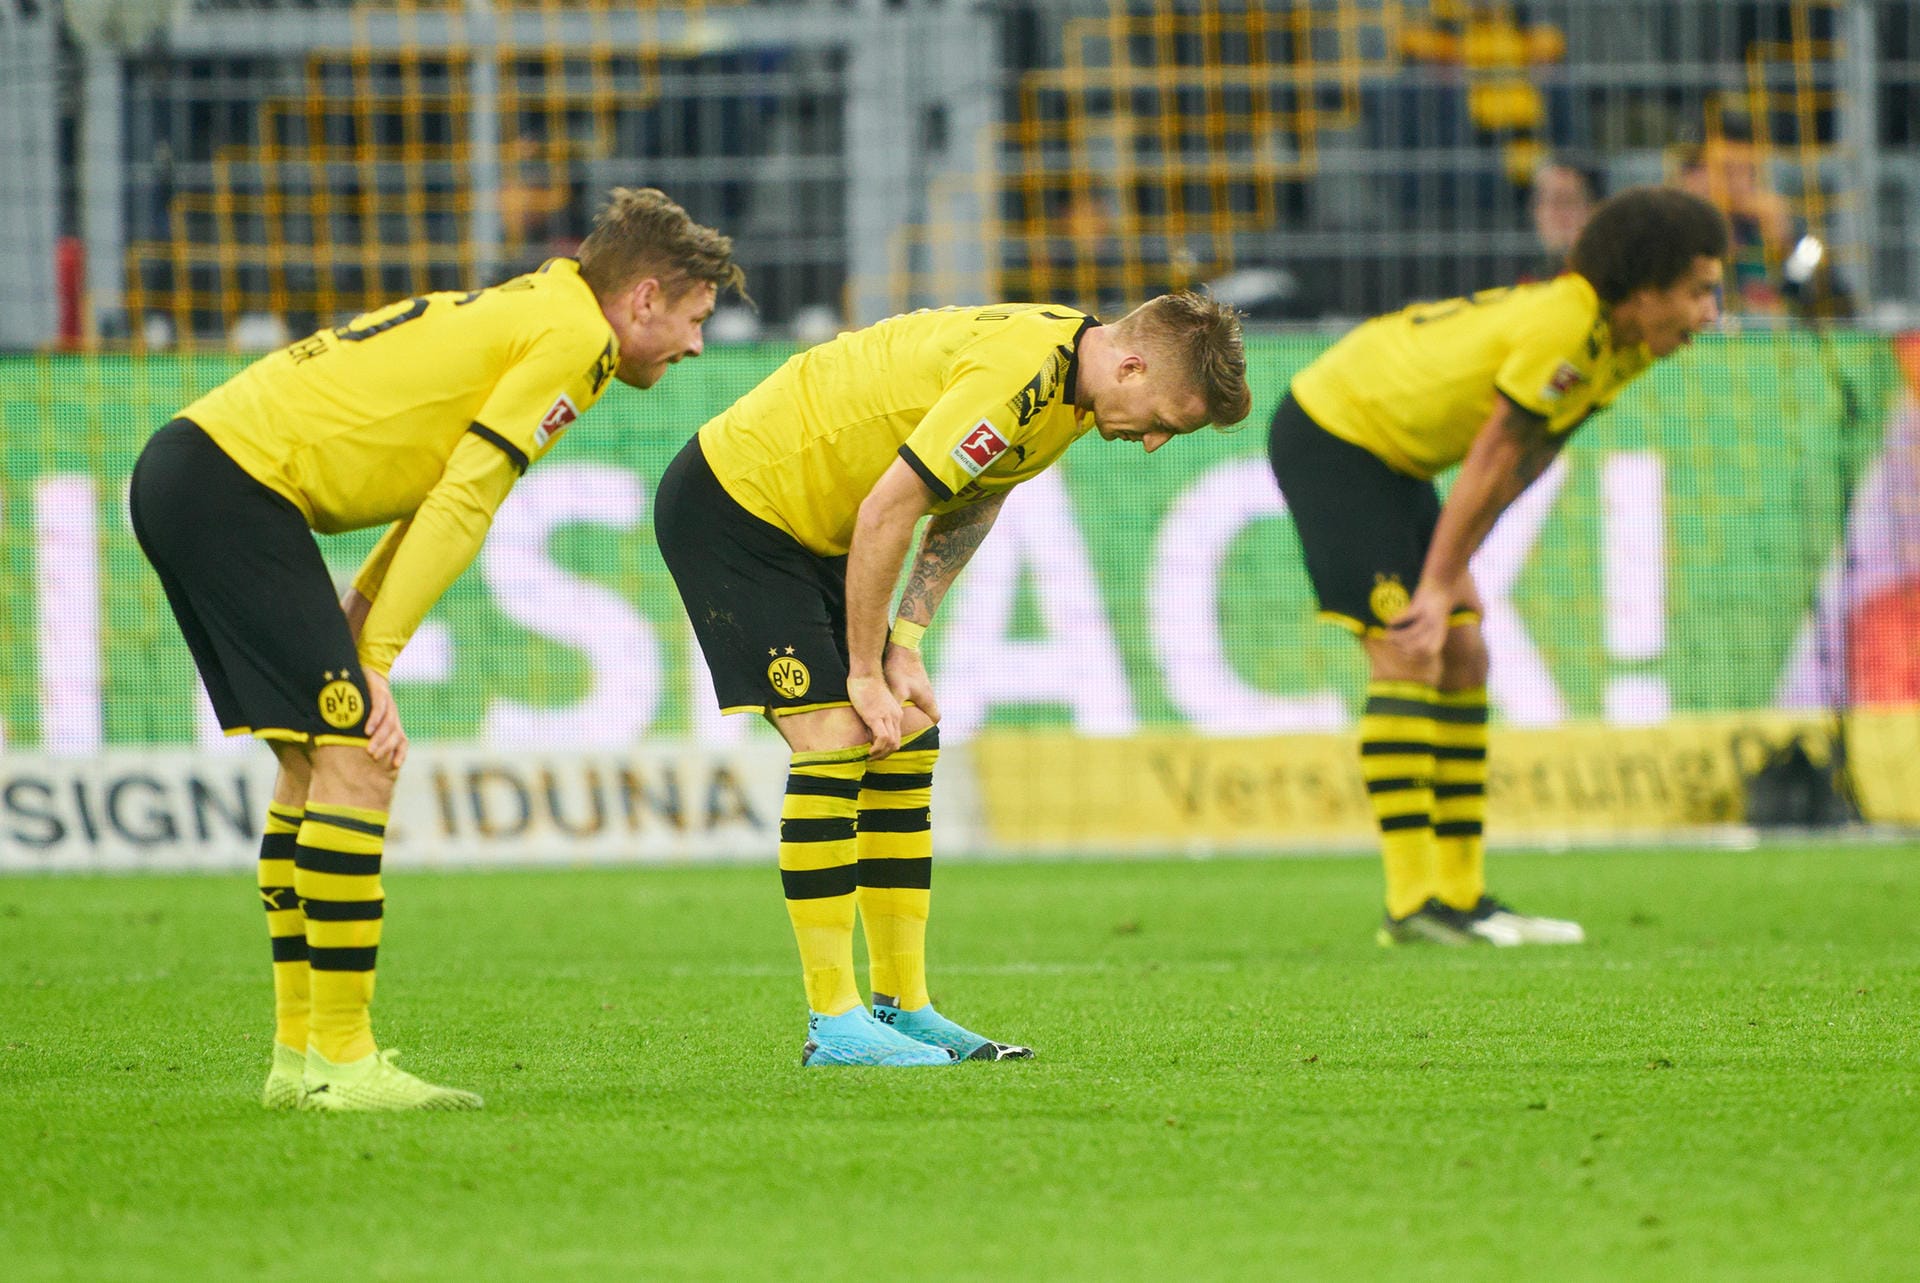 Beinahe hätte Borussia Dortmund gegen den SC Paderborn verloren. Nur dank eines Last-Minute-Treffers von Marco Reus retteten die Dortmunder noch ein 3:3. Dennoch waren sie alles andere als zufrieden. t-online.de hat die Stimmen zum Spiel gesammelt.